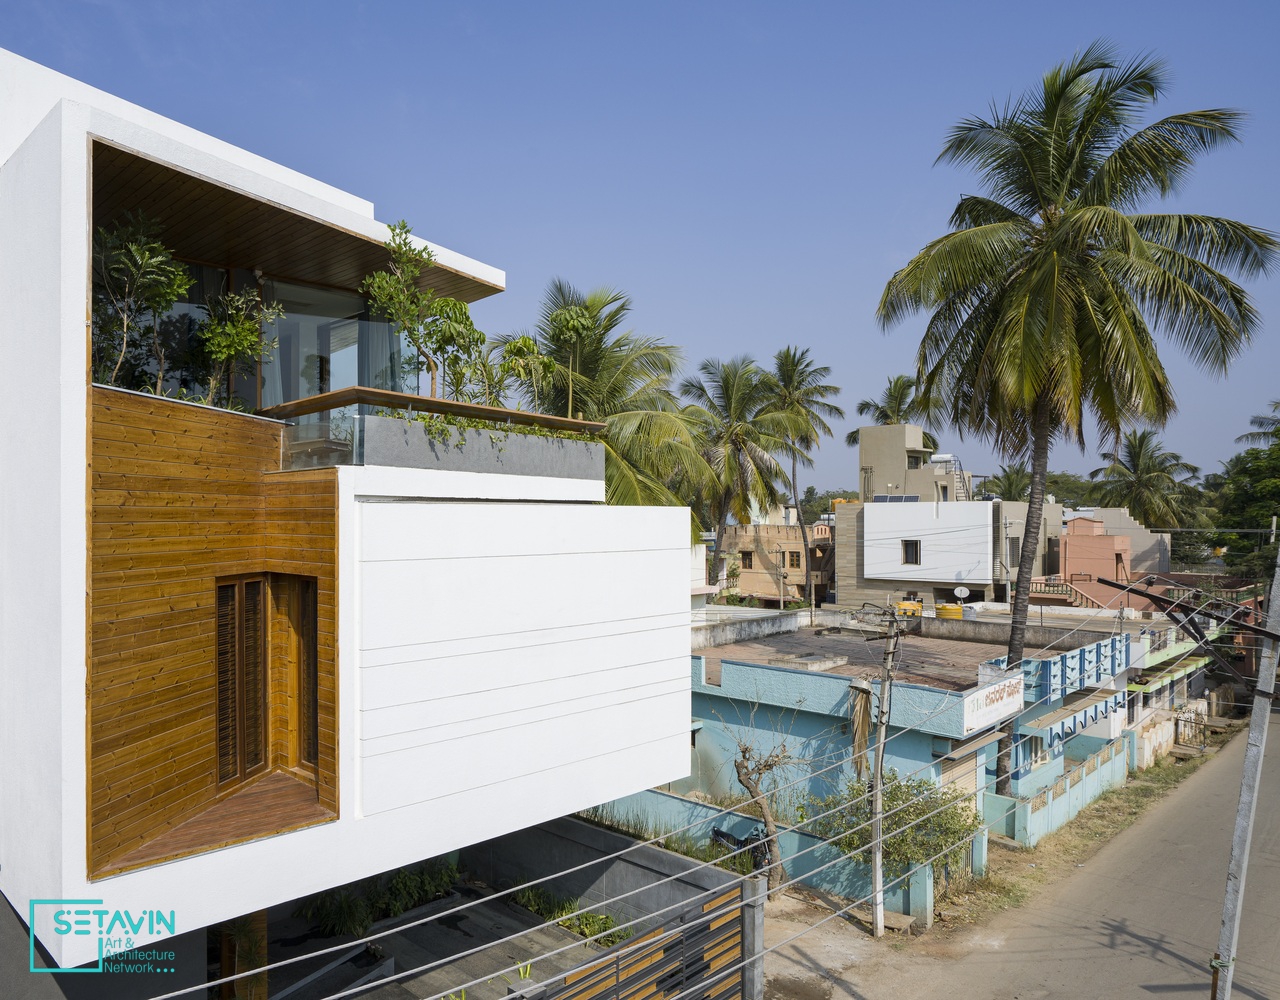 مجتمع اقامتی Gauribidanur اثر تیم معماری Cadence ،هند